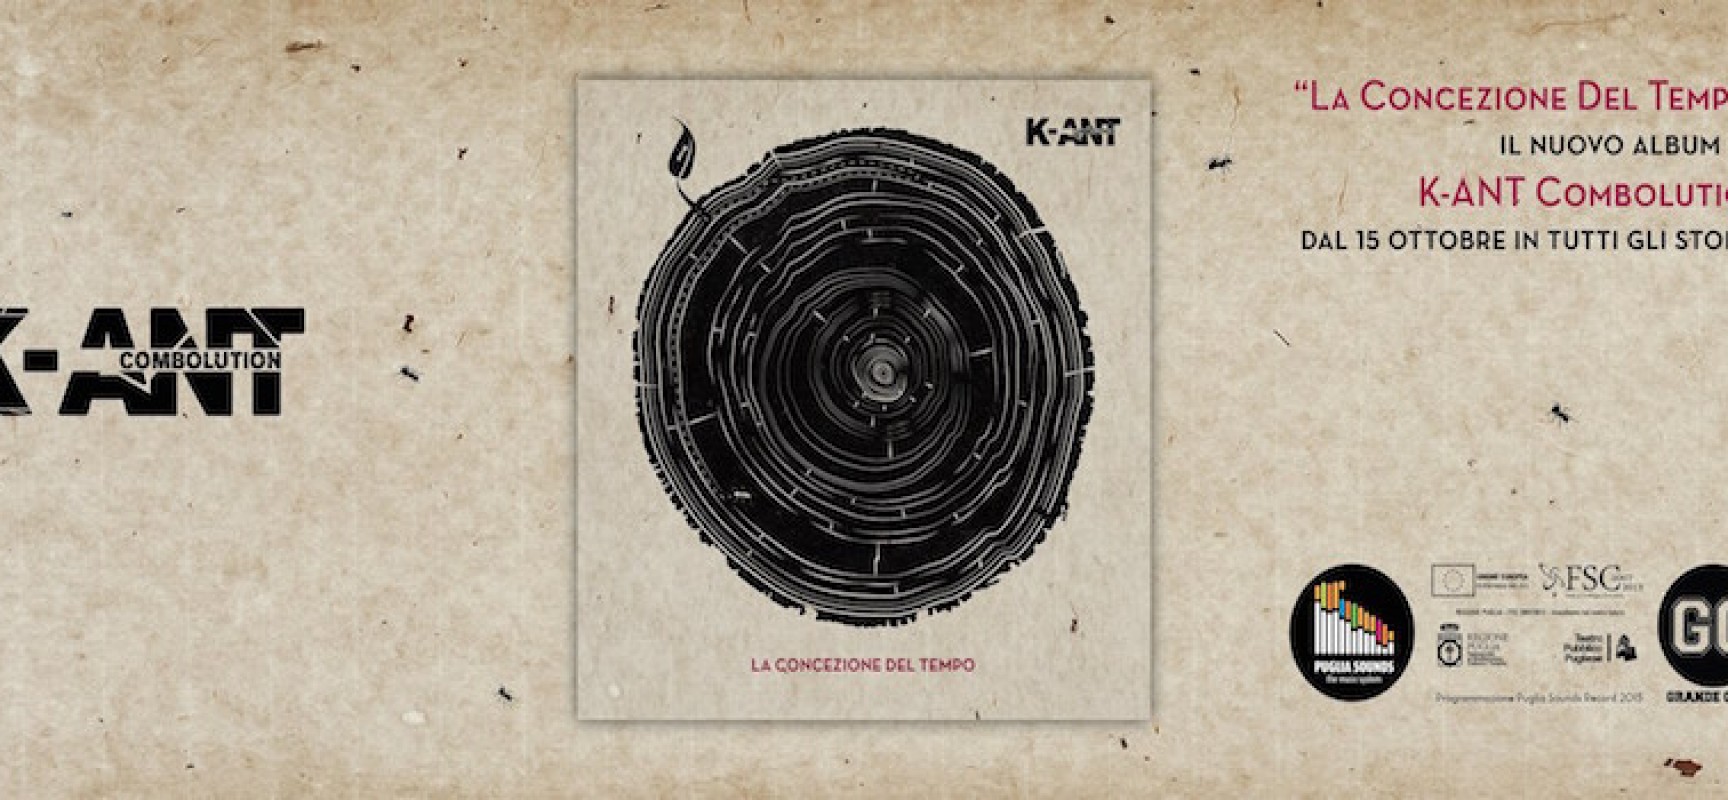 La concezione del tempo, disponibile il nuovo album dei K-ANT Combolution